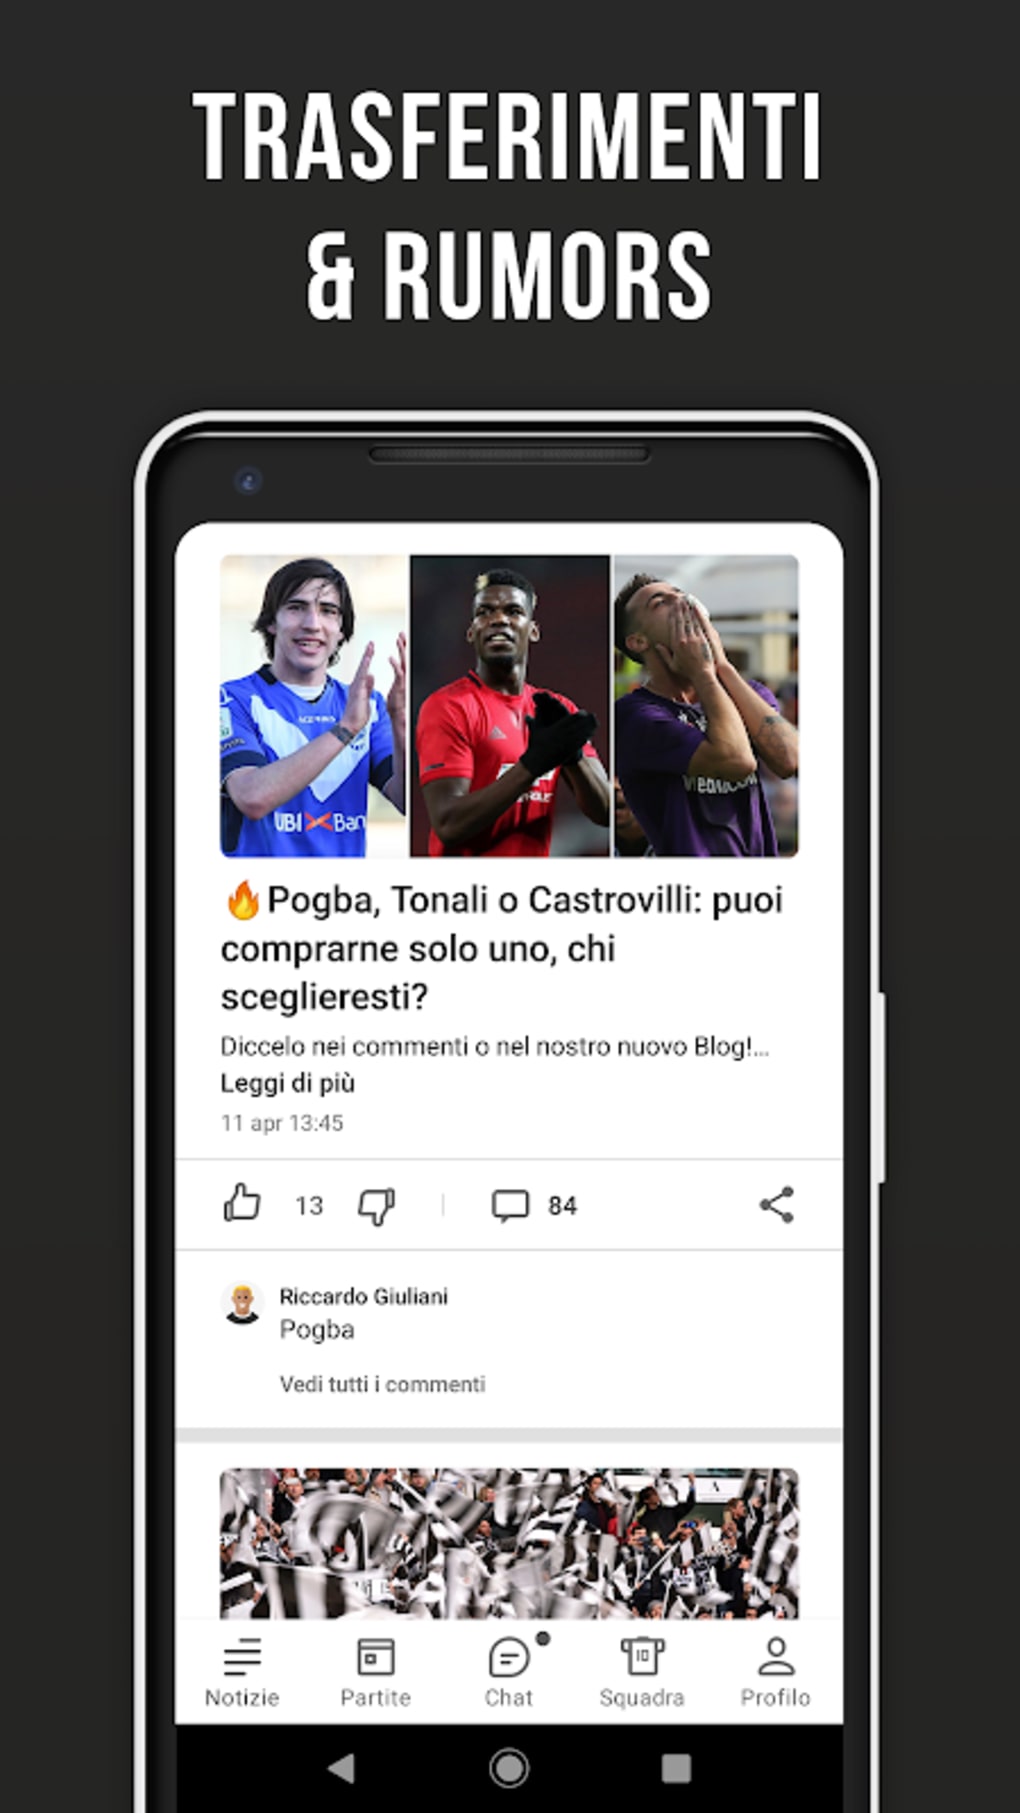 Futlaticos - Futebol ao vivo para Android - Download